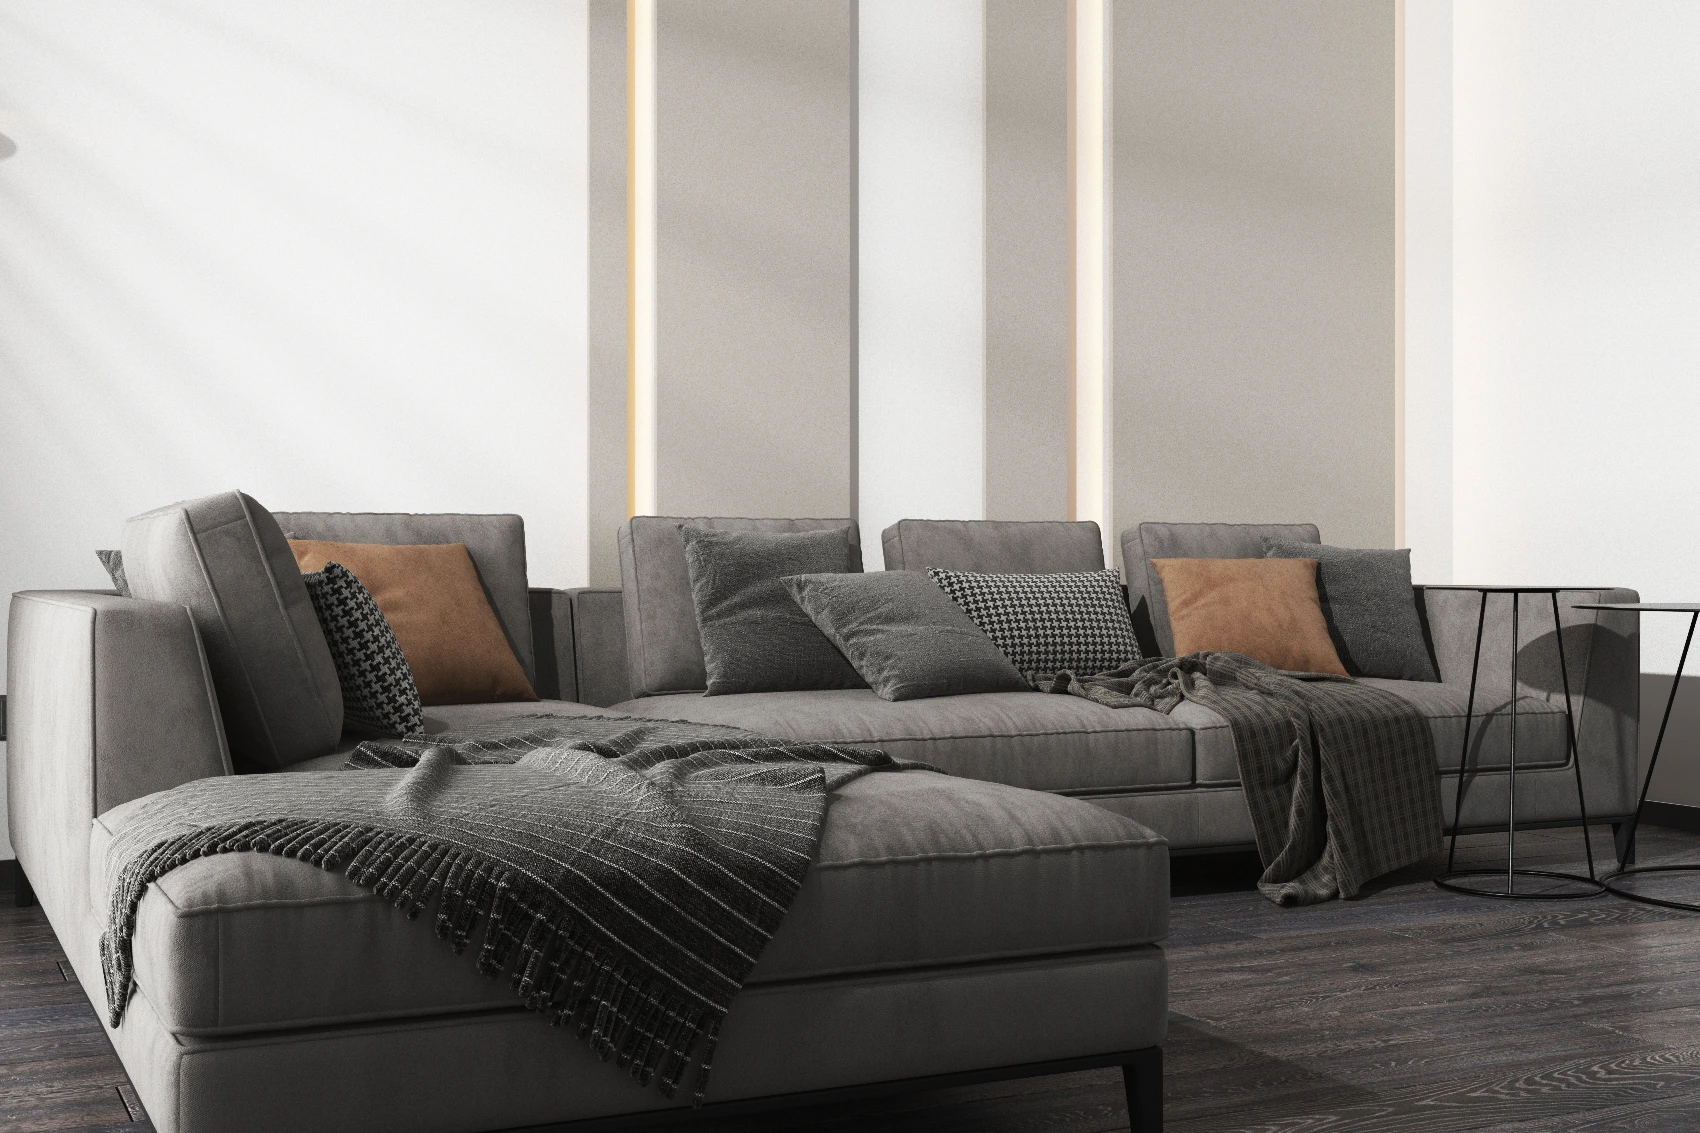 Как правильно сочетать цвета штор и дивана: варианты, которые советуют дизайнеры